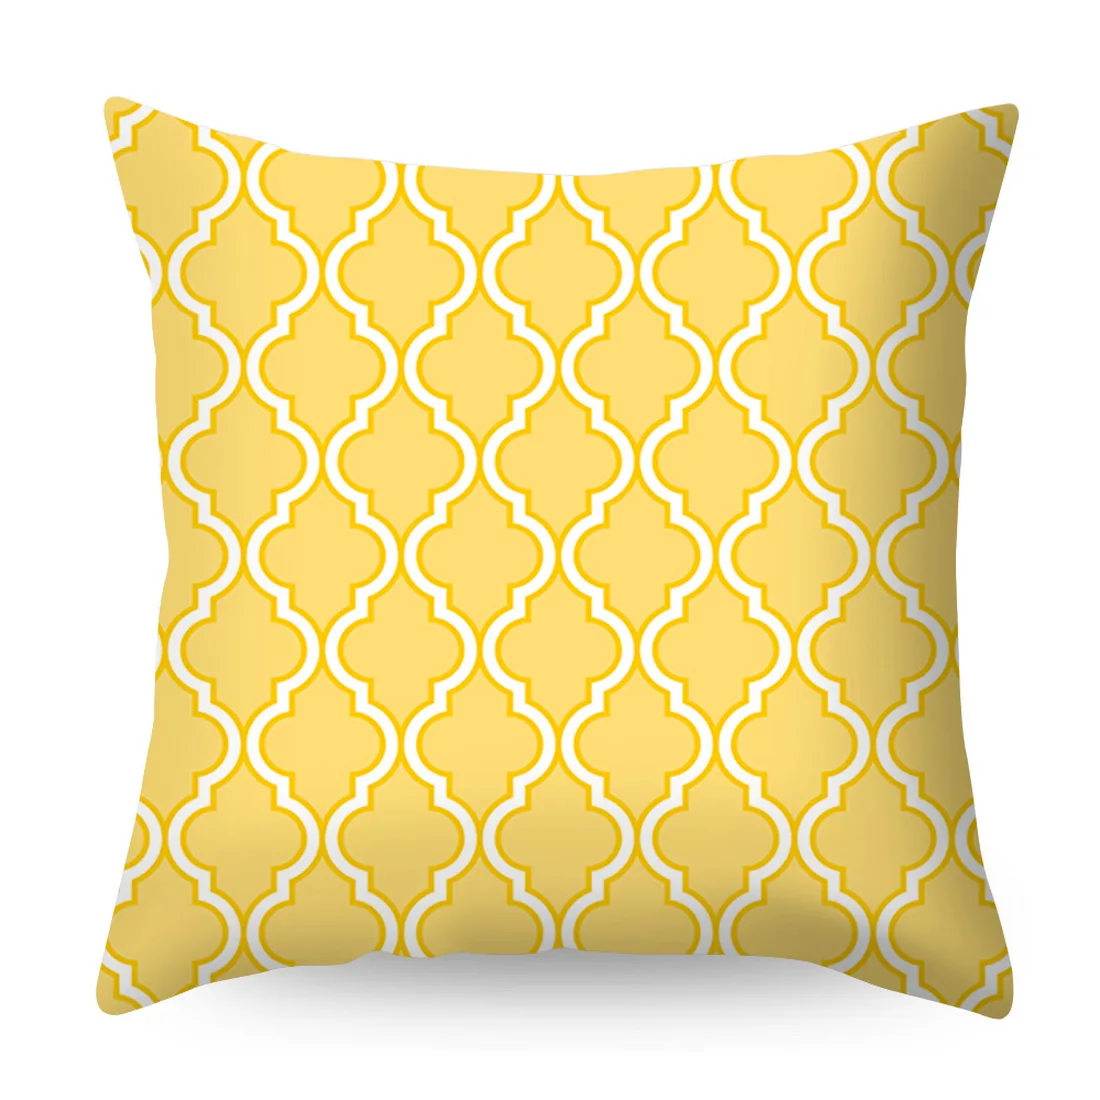 Urijk жёлтая, с геометрическим узором, с принтом Подушка Чехол диван автомобиля талии чехол для подушки офис Kussenhoes Housse de Coussin Подушка Чехол - Цвет: 7